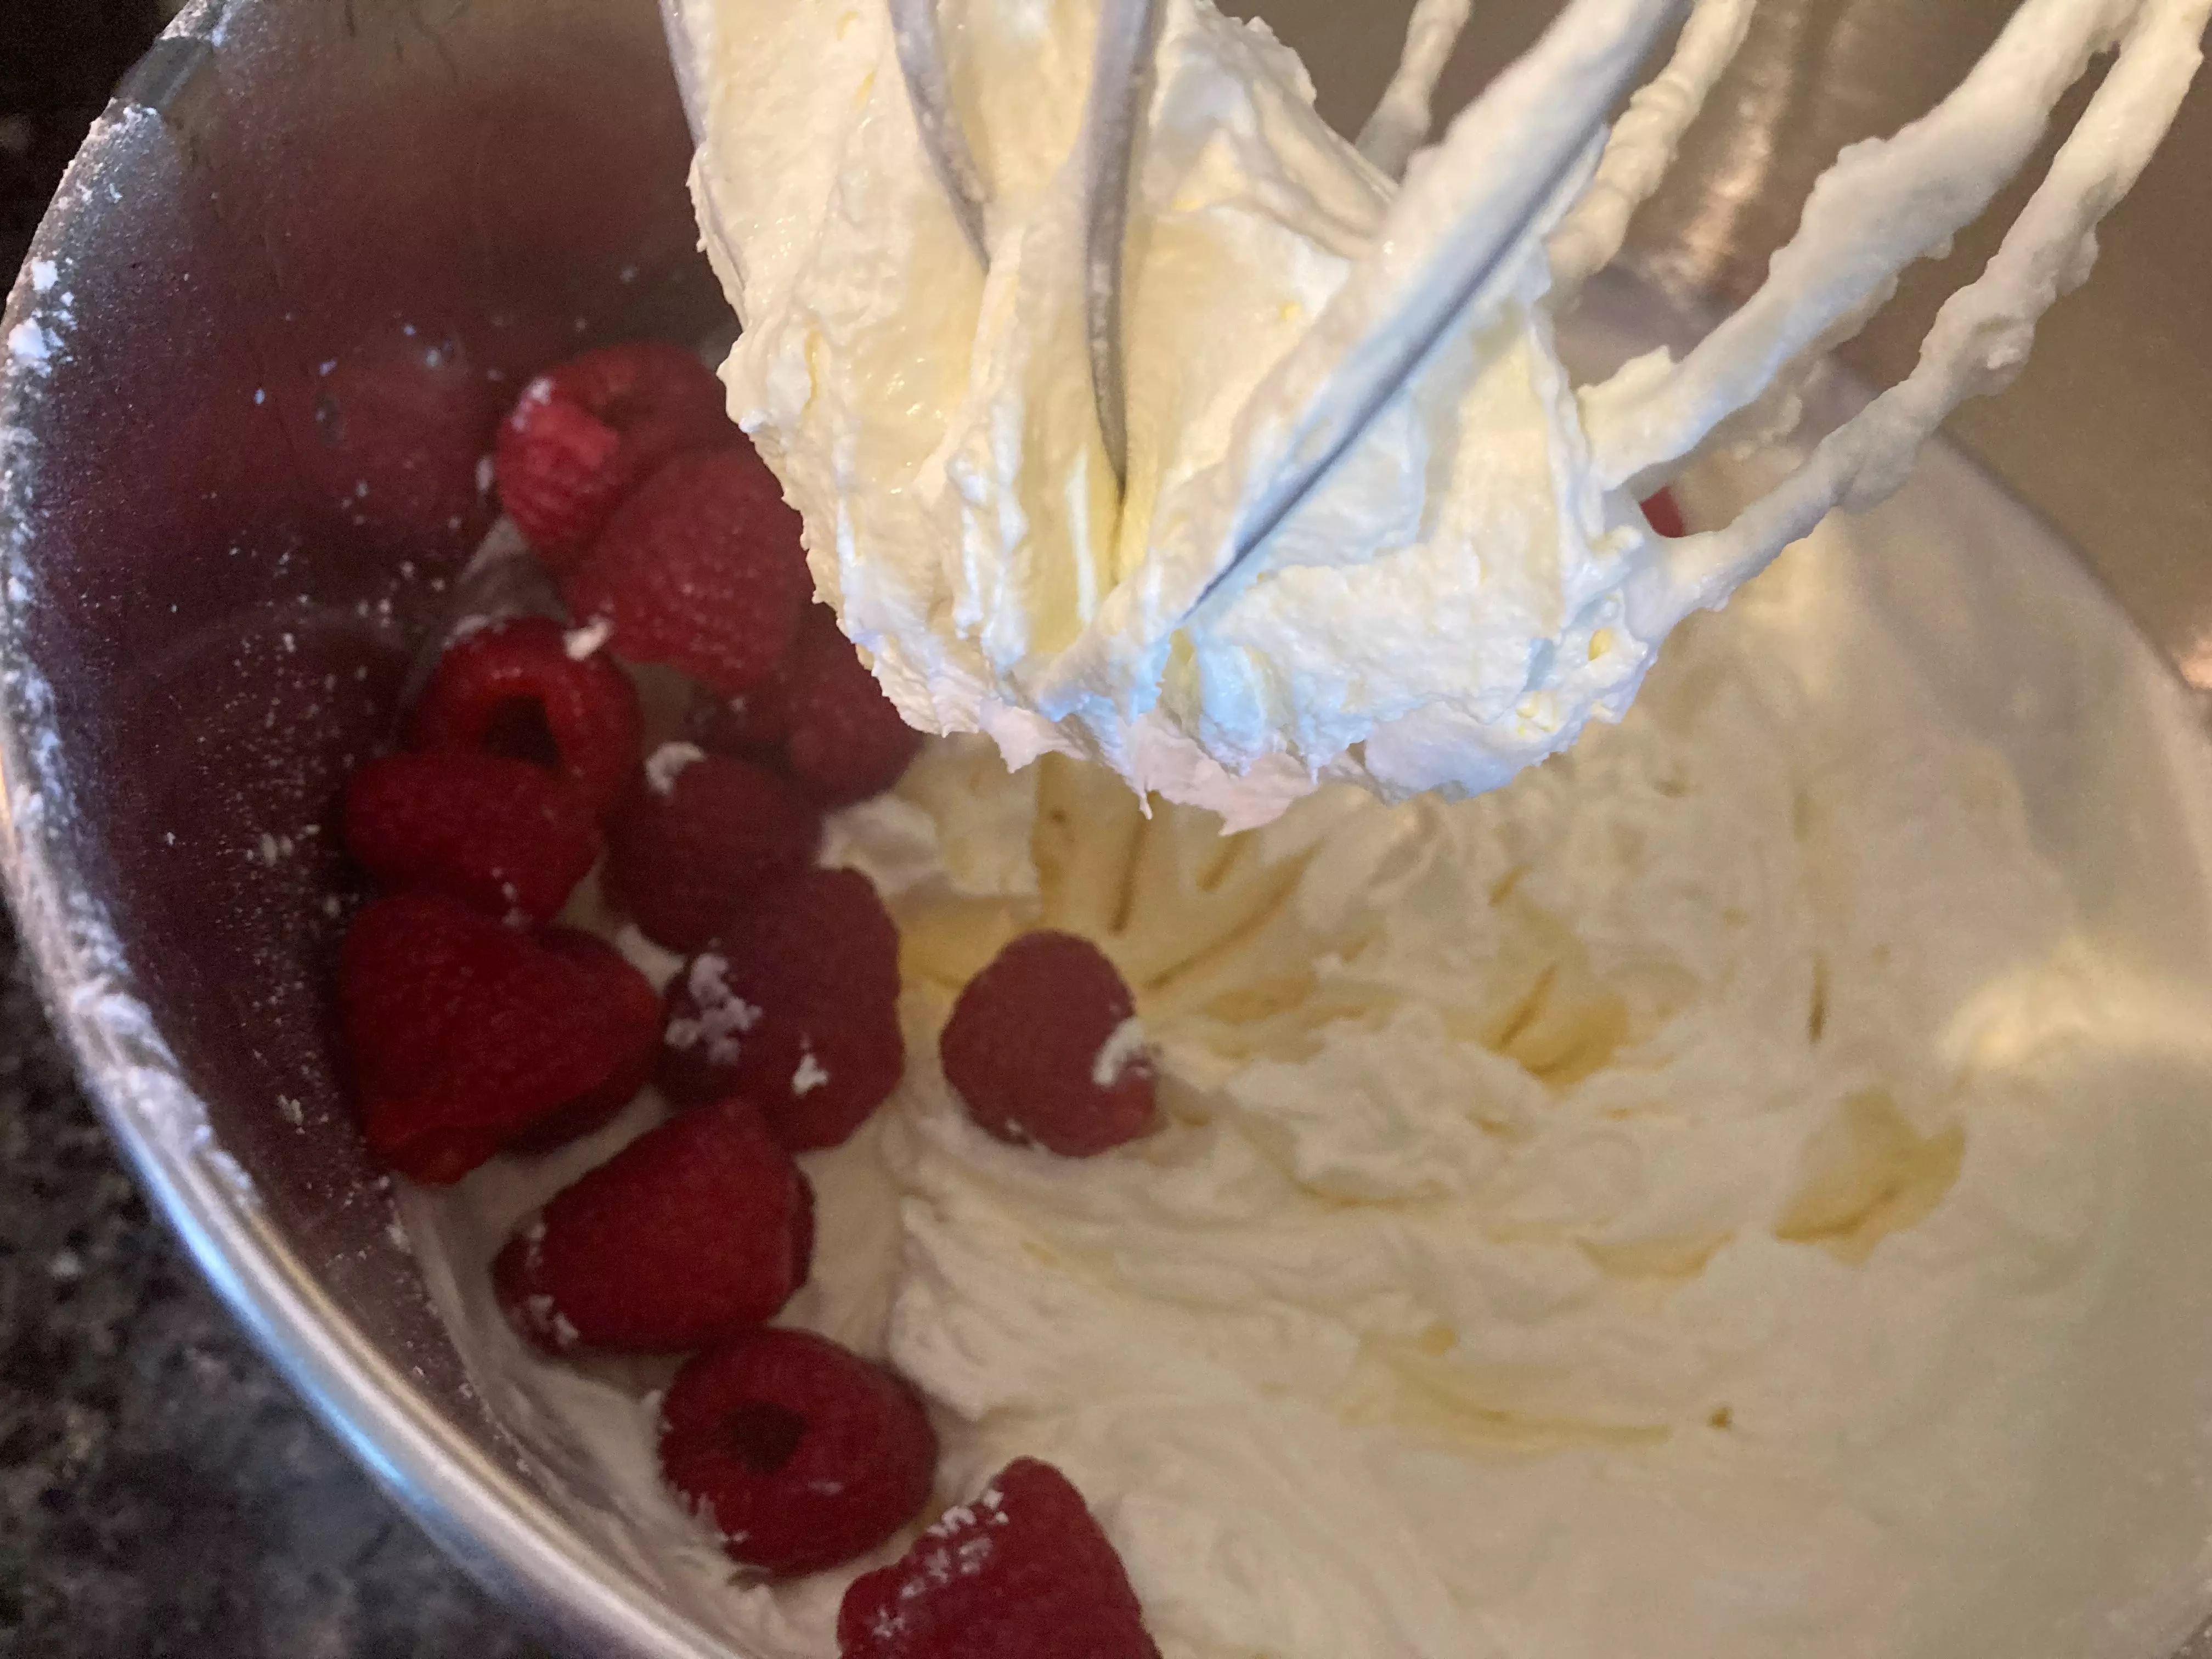 raspberries in whipped cream